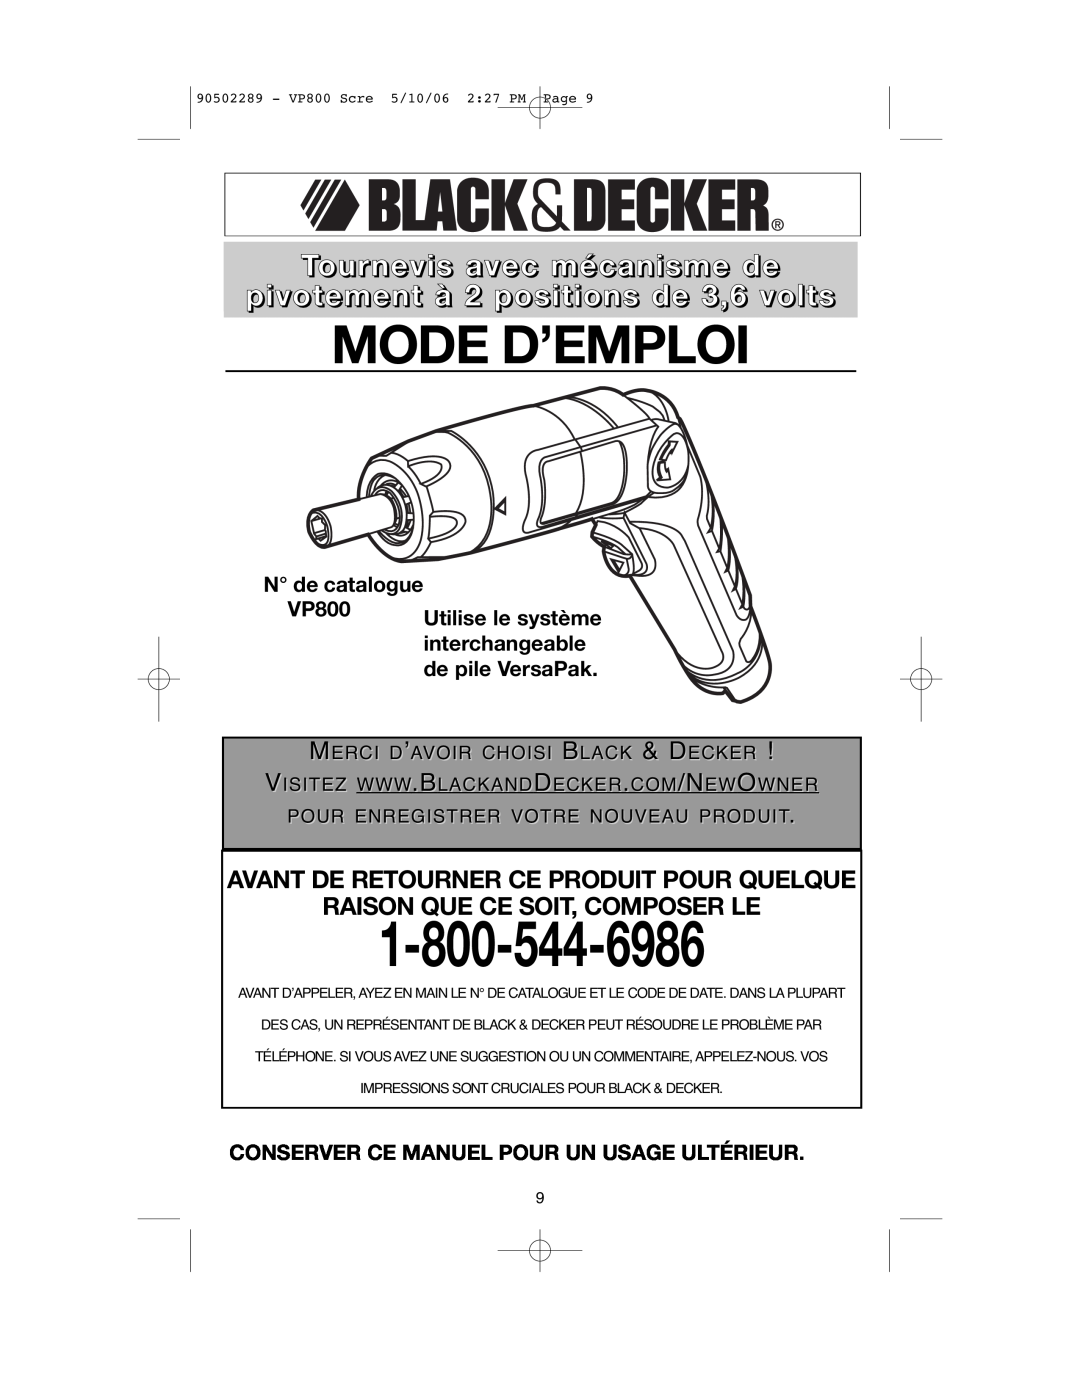 Black & Decker VP800 Mode D’Emploi, Tournevis avec mécanisme de pivotement à 2 positions de 3,6 volts, N de catalogue 